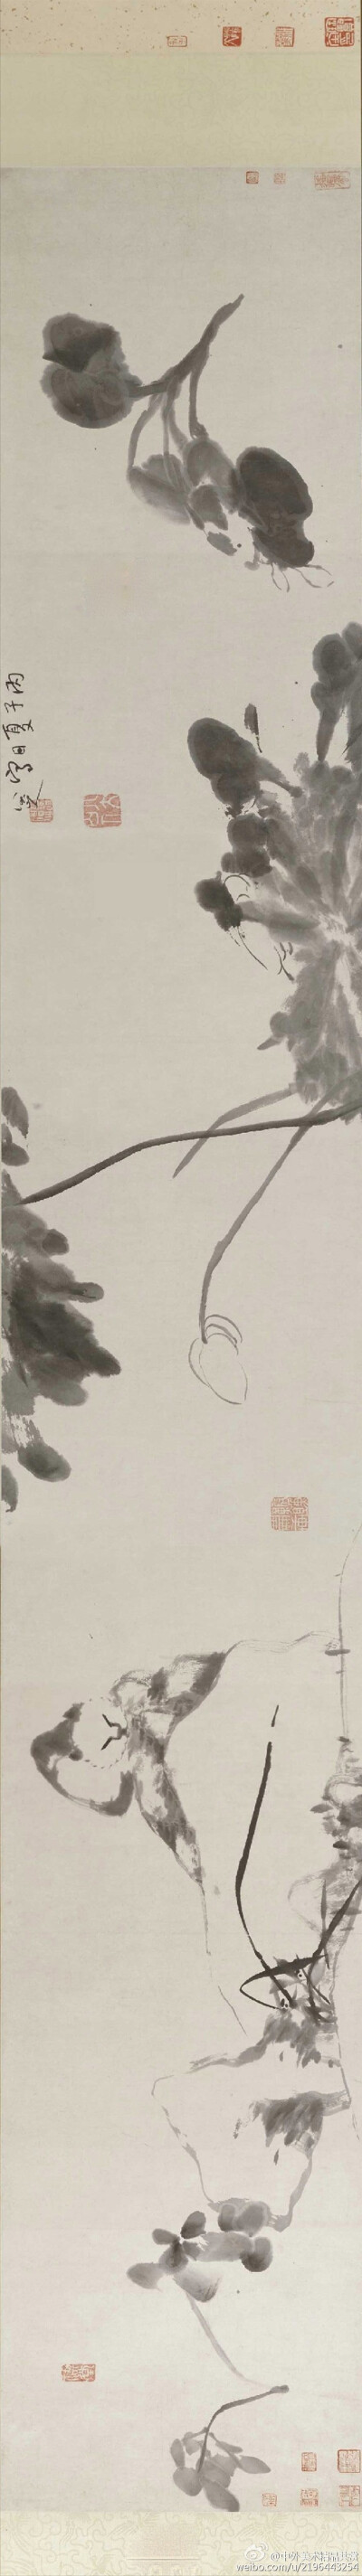 清 朱耷《貓石圖卷》—— 紙本水墨，34 × 218 釐米，現藏故宮博物院。